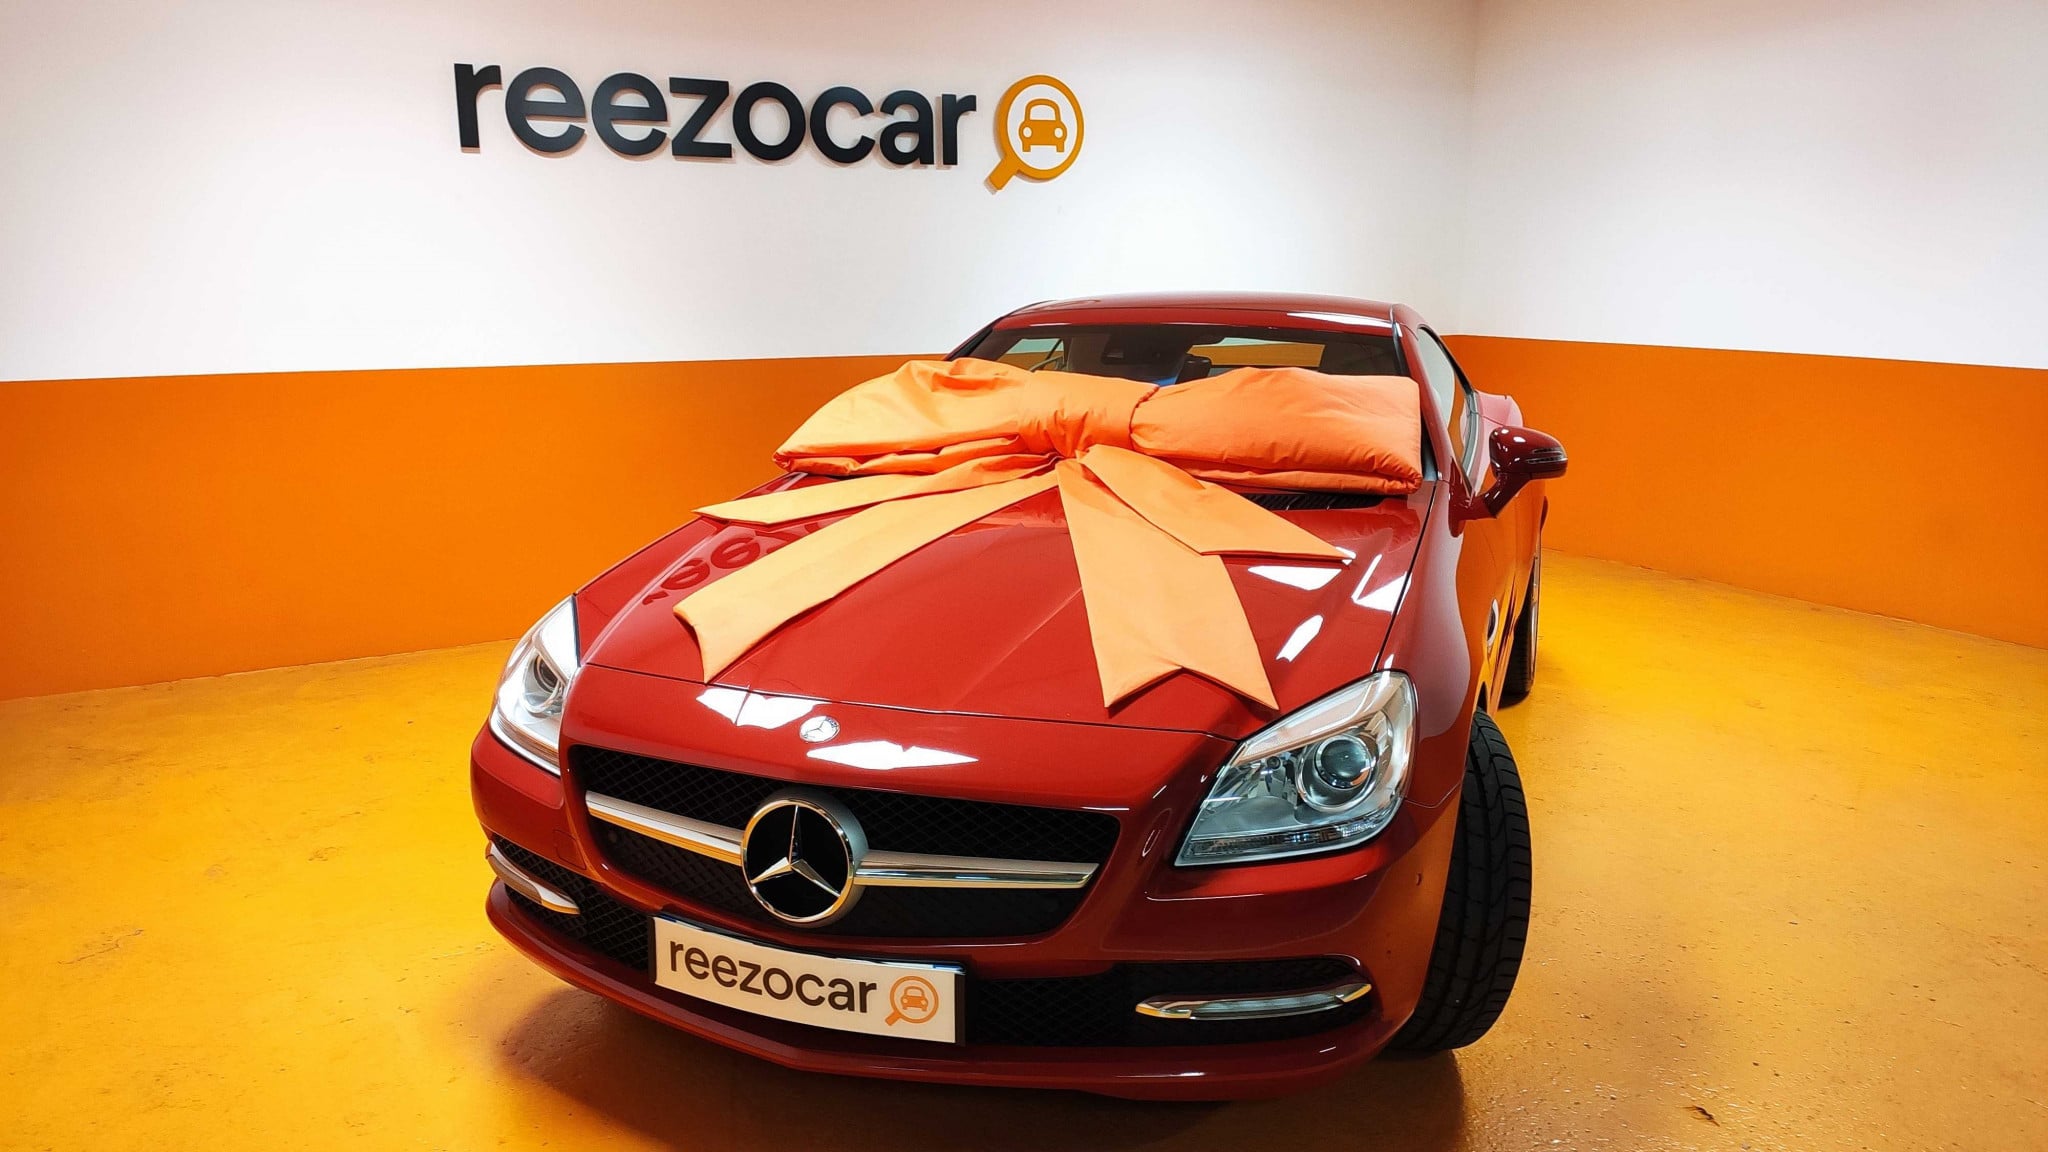 Top 10 des meilleurs intérieurs de voiture 2012 - blog auto